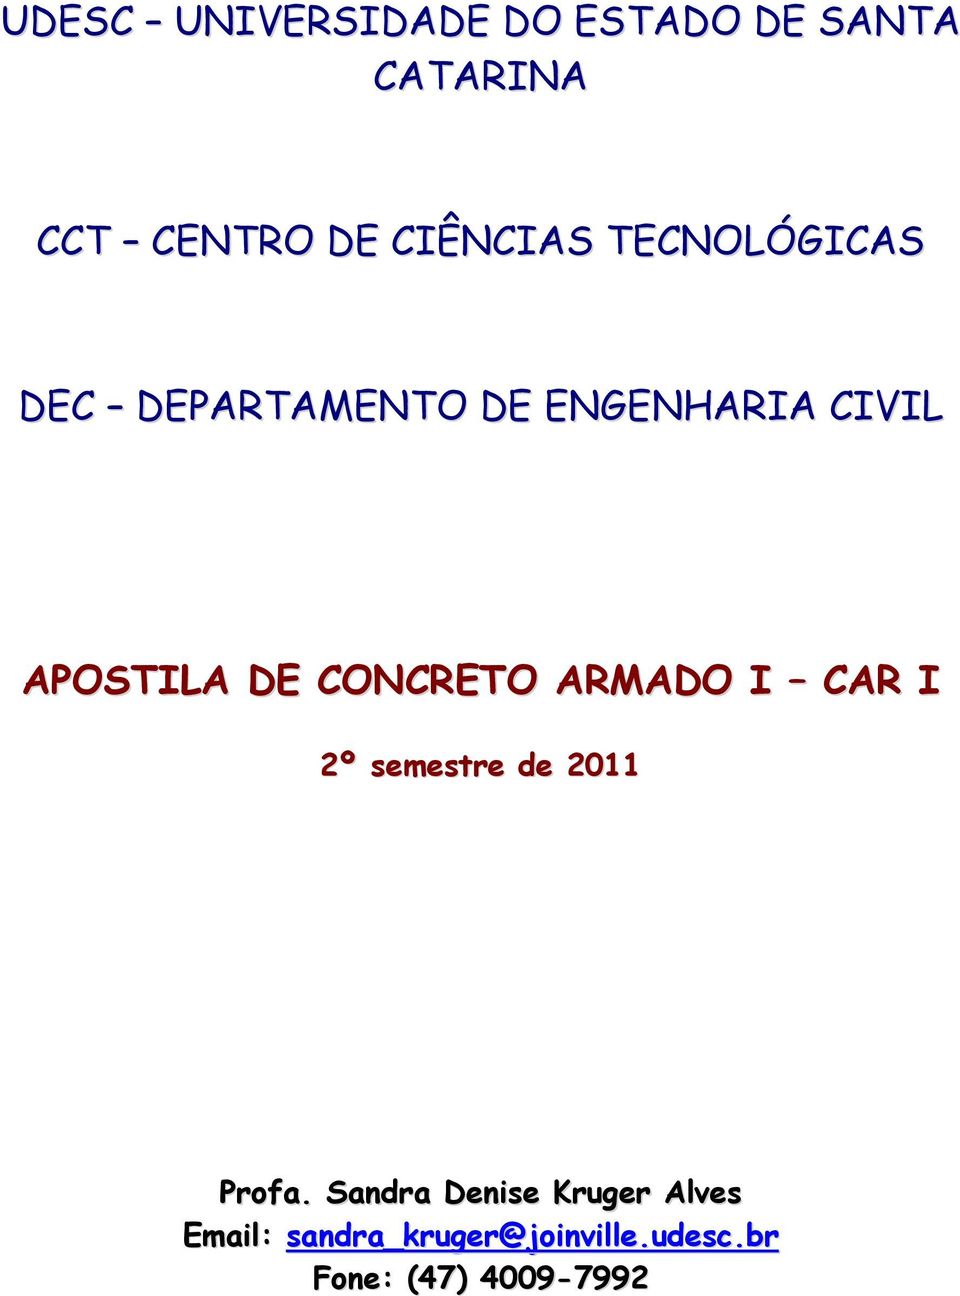 APOSTILA DE CONCRETO ARMADO I CAR I 2º emetre de 2011 Proa.